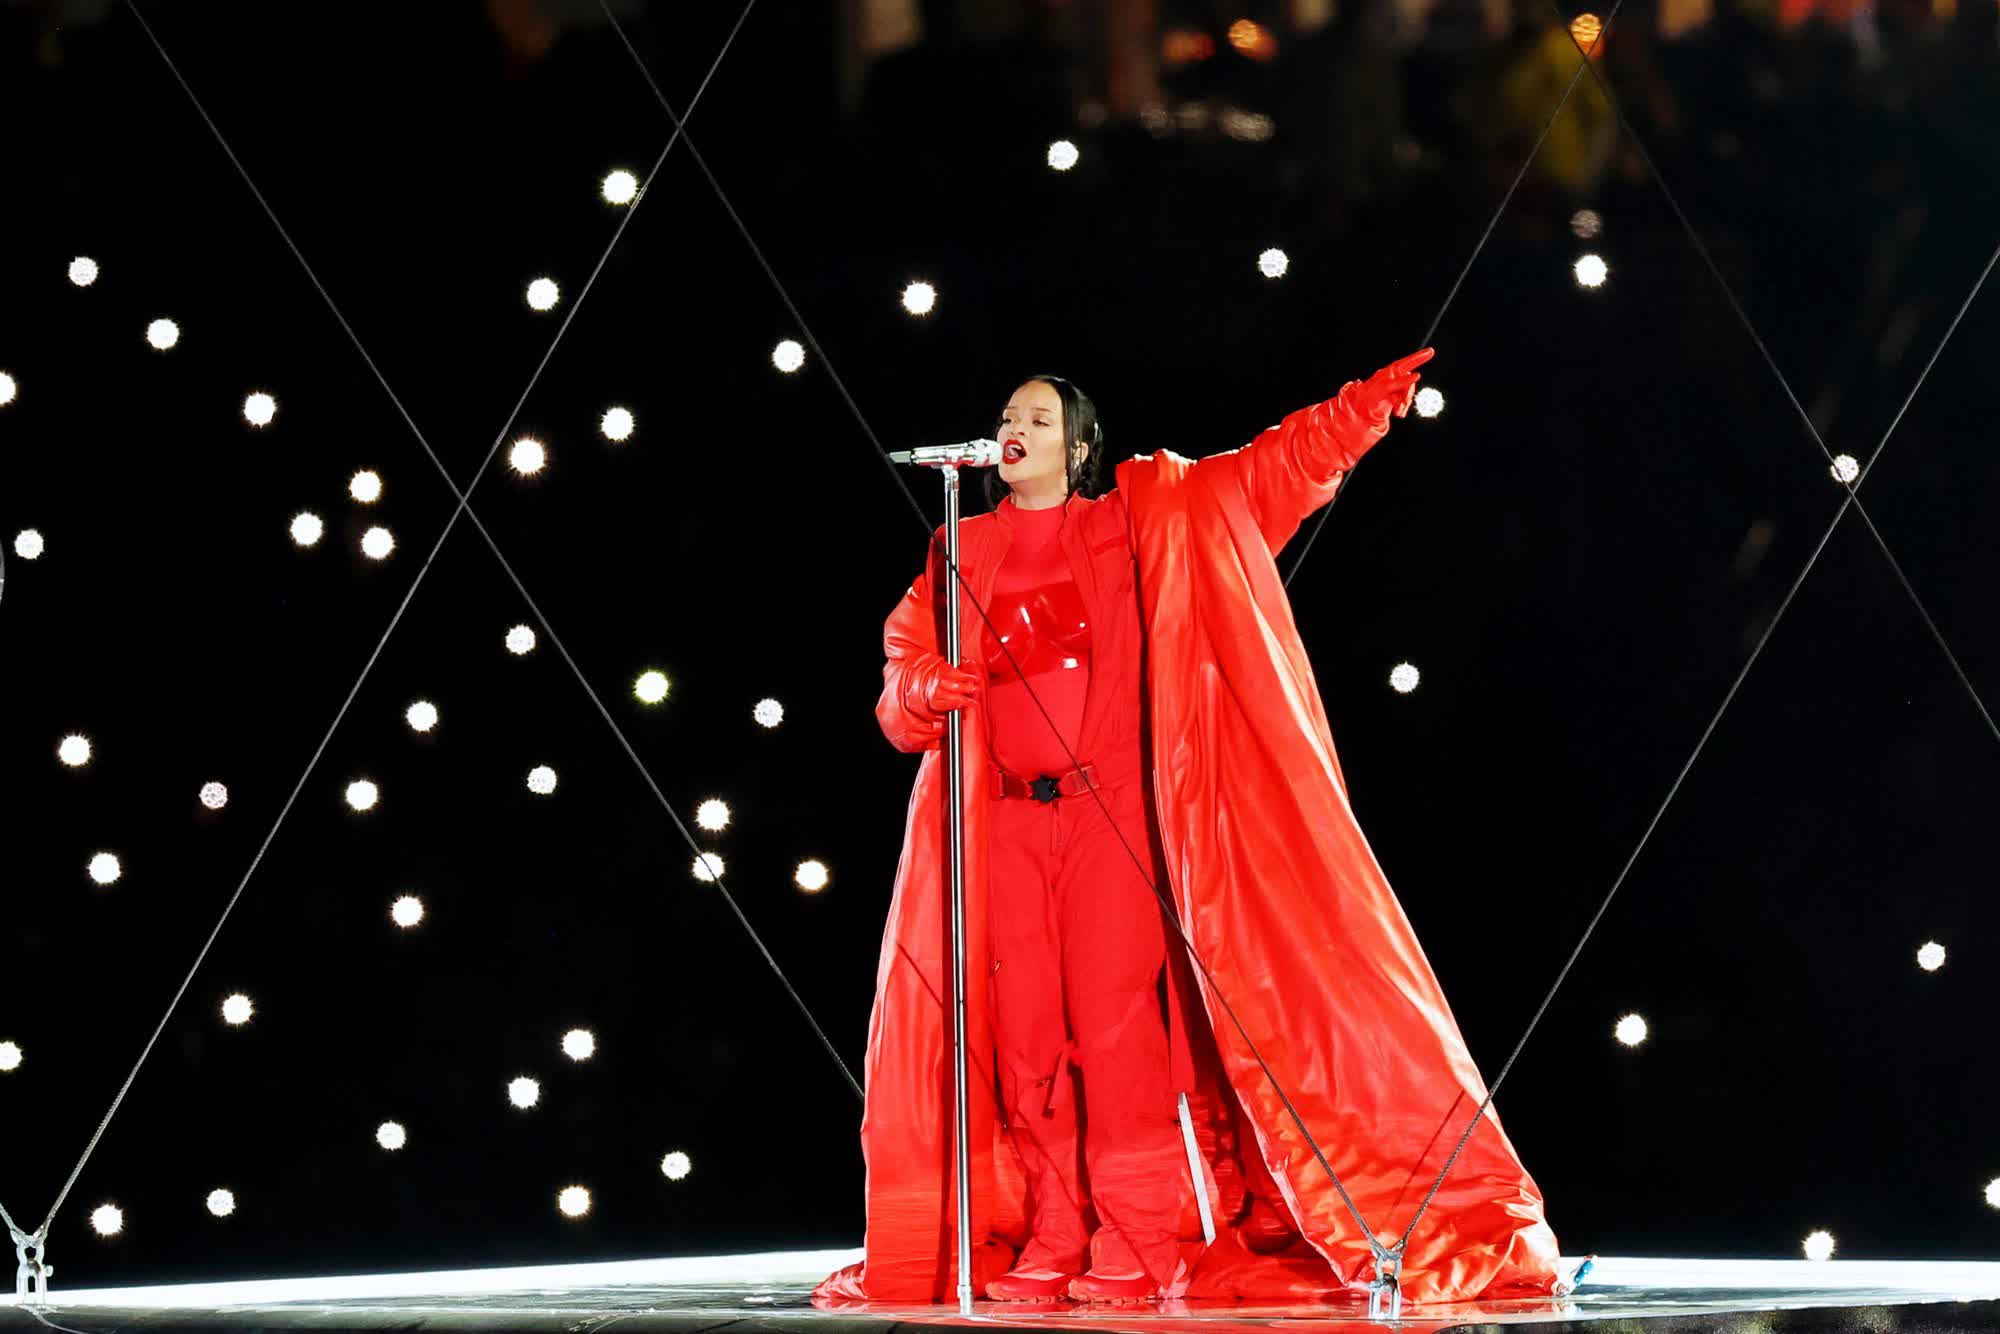 Siêu sân khấu của Rihanna tại Super Bowl chỉ được dựng trong 5 phút, xem clip hậu trường mà choáng! - Ảnh 1.